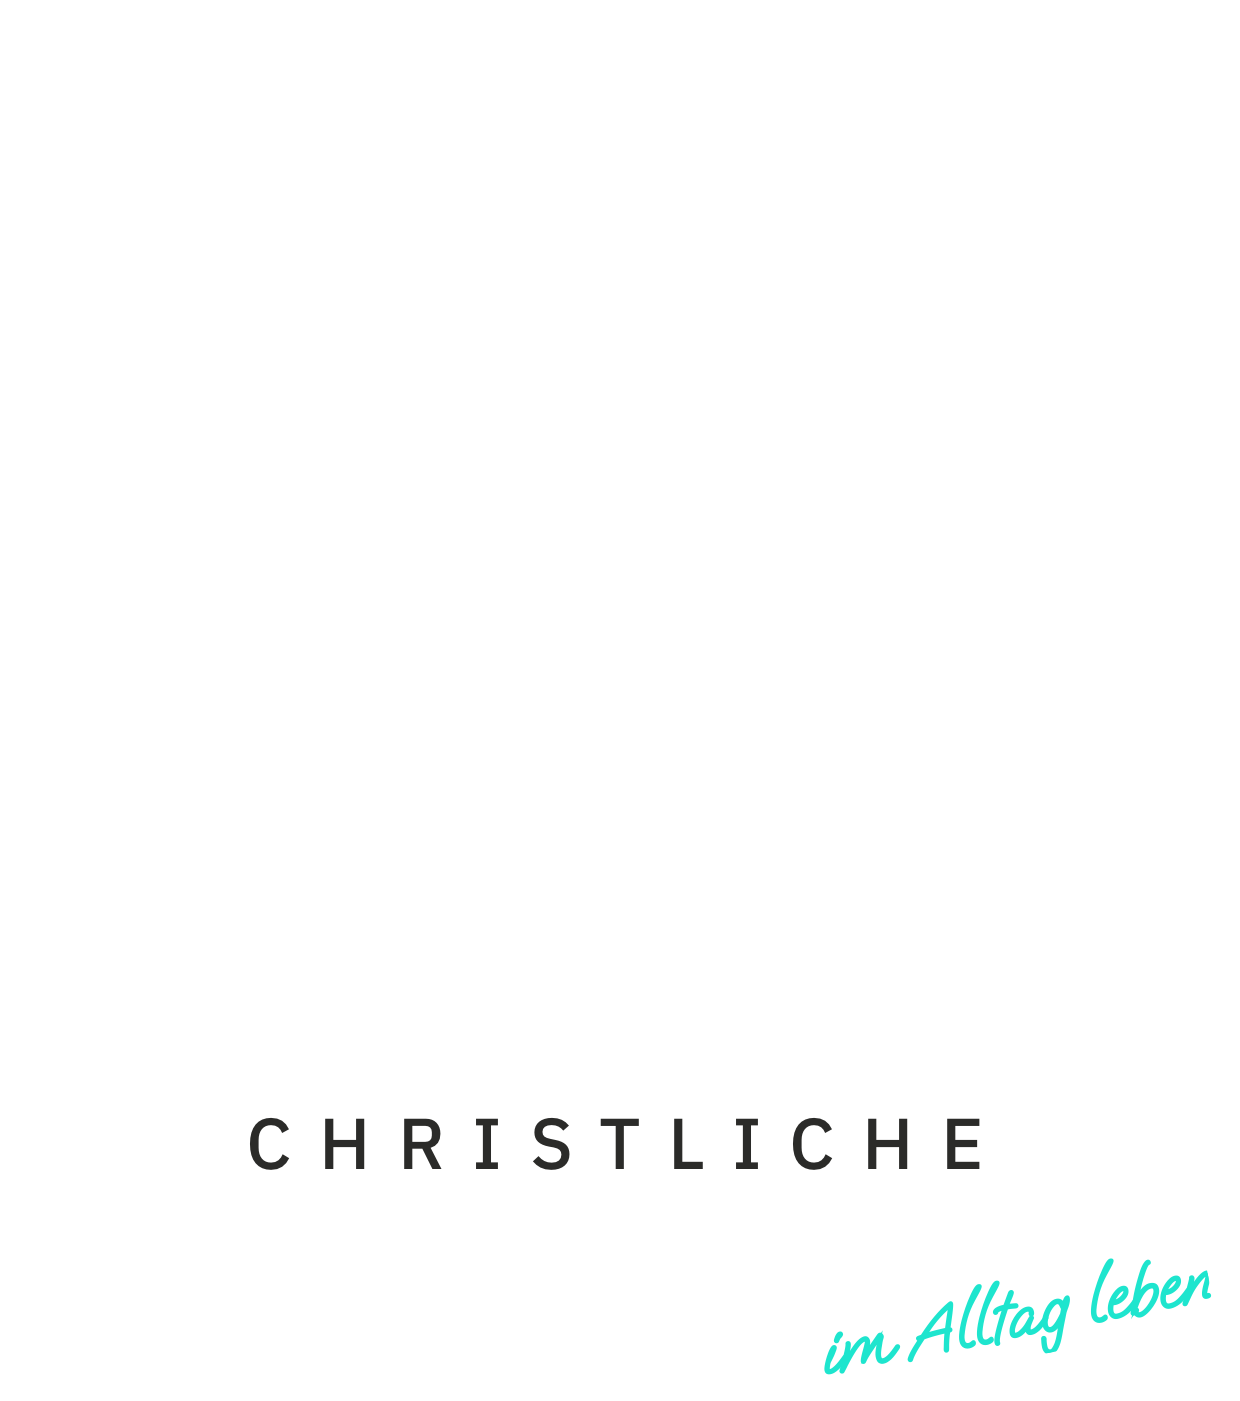 Logo BASE